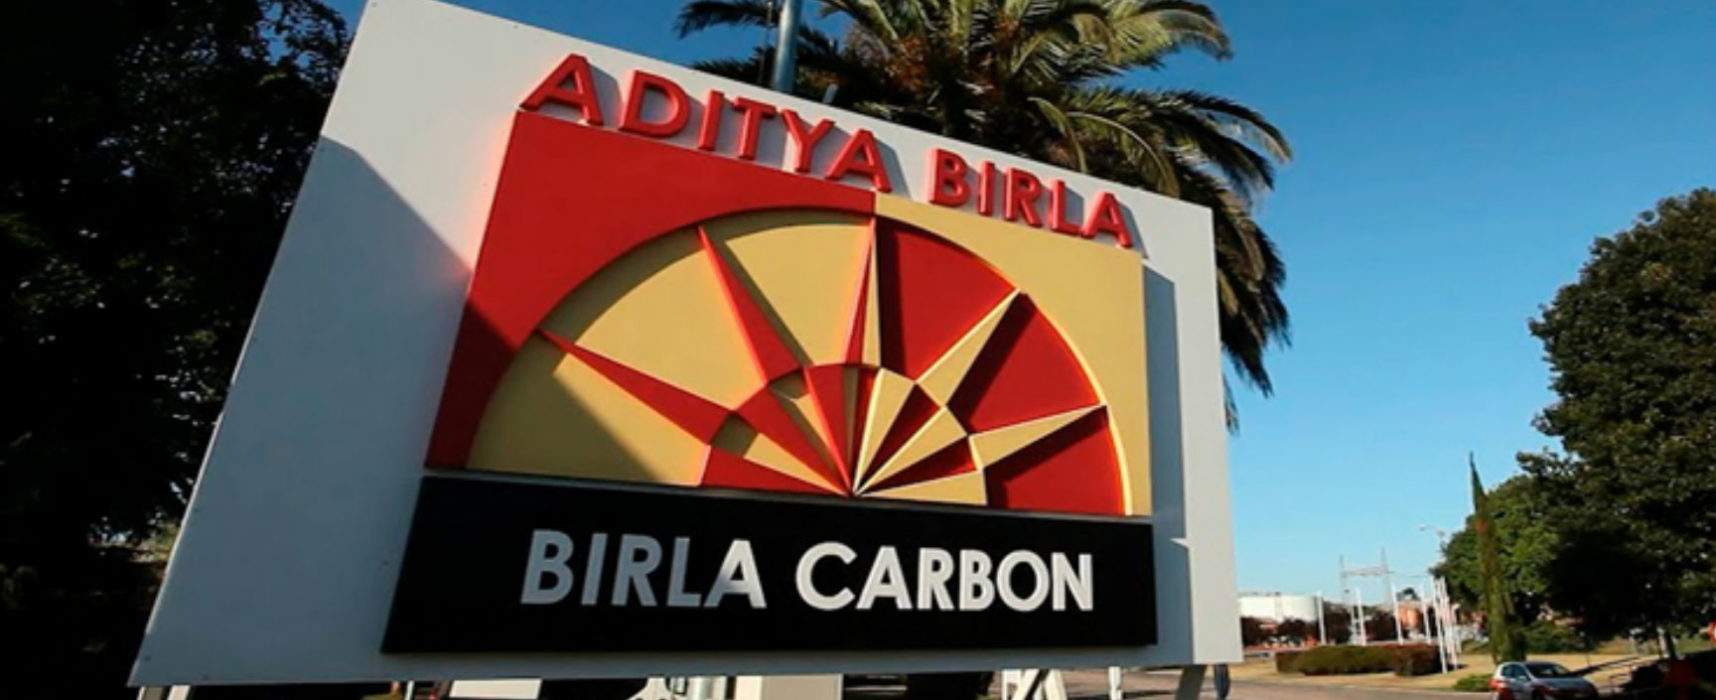 Birla Carbon Spain estrena instalaciones y hace hincapié en la RSE